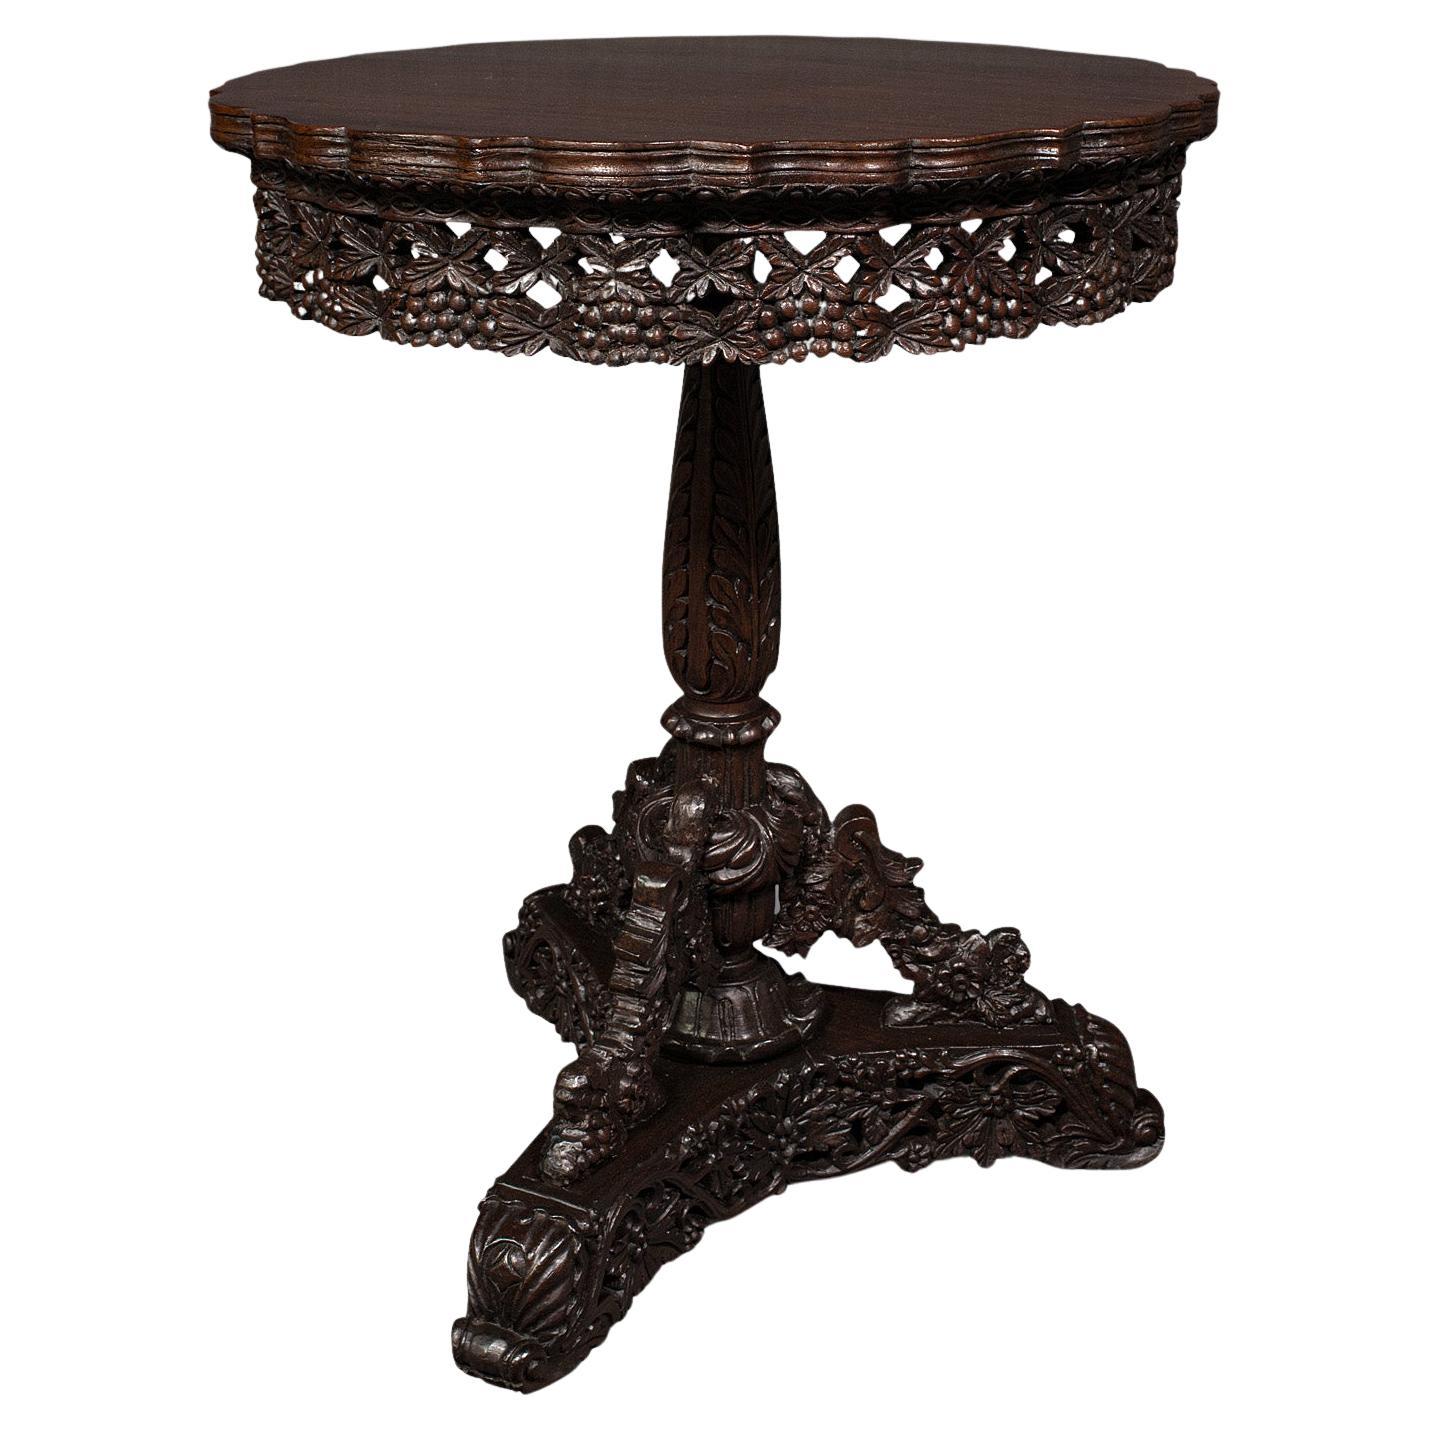 Ancienne table à lampe sculptée anglo-indienne, teck, plateau basculant, coloniale et victorienne